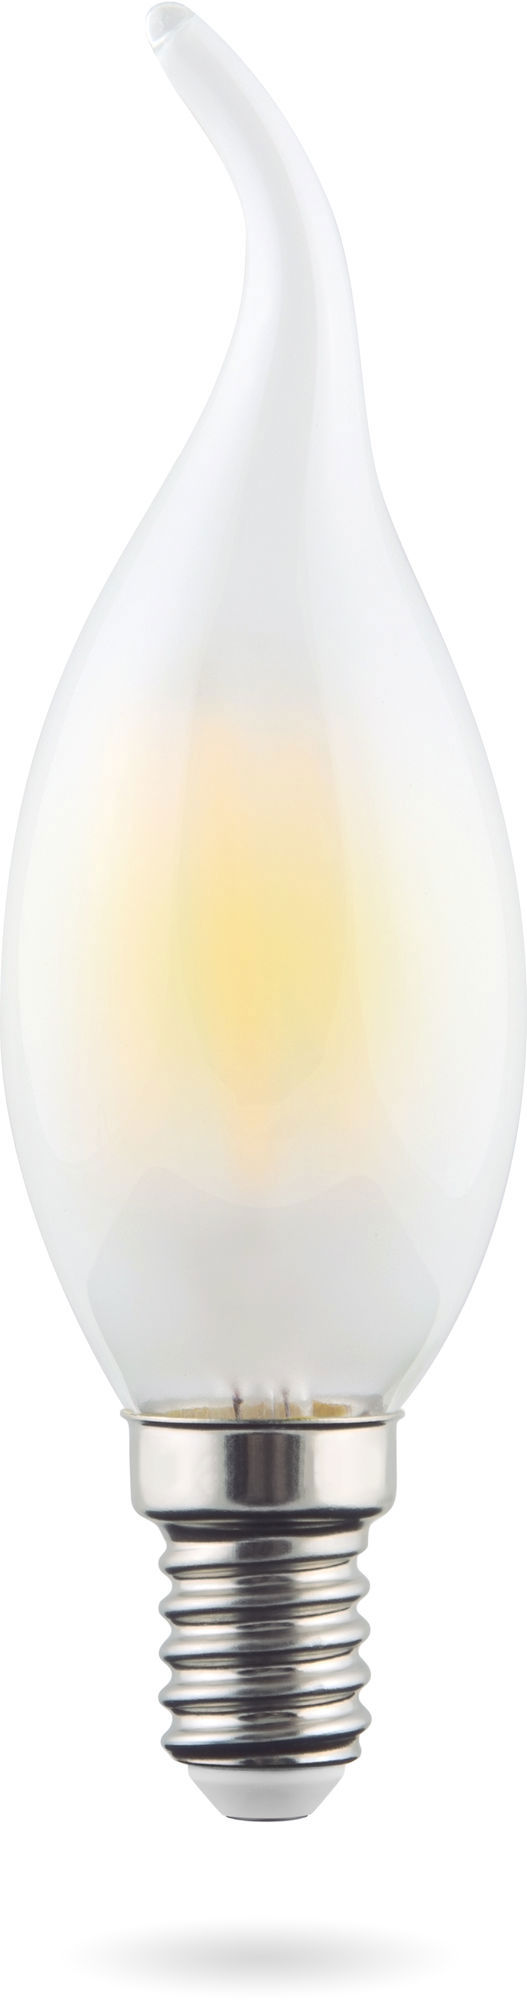 93759943 Лампа Crystal светодионая E14 6 Вт свеча на ветру 570 Лм нейтральный свет STLM-0565895 VOLTEGA